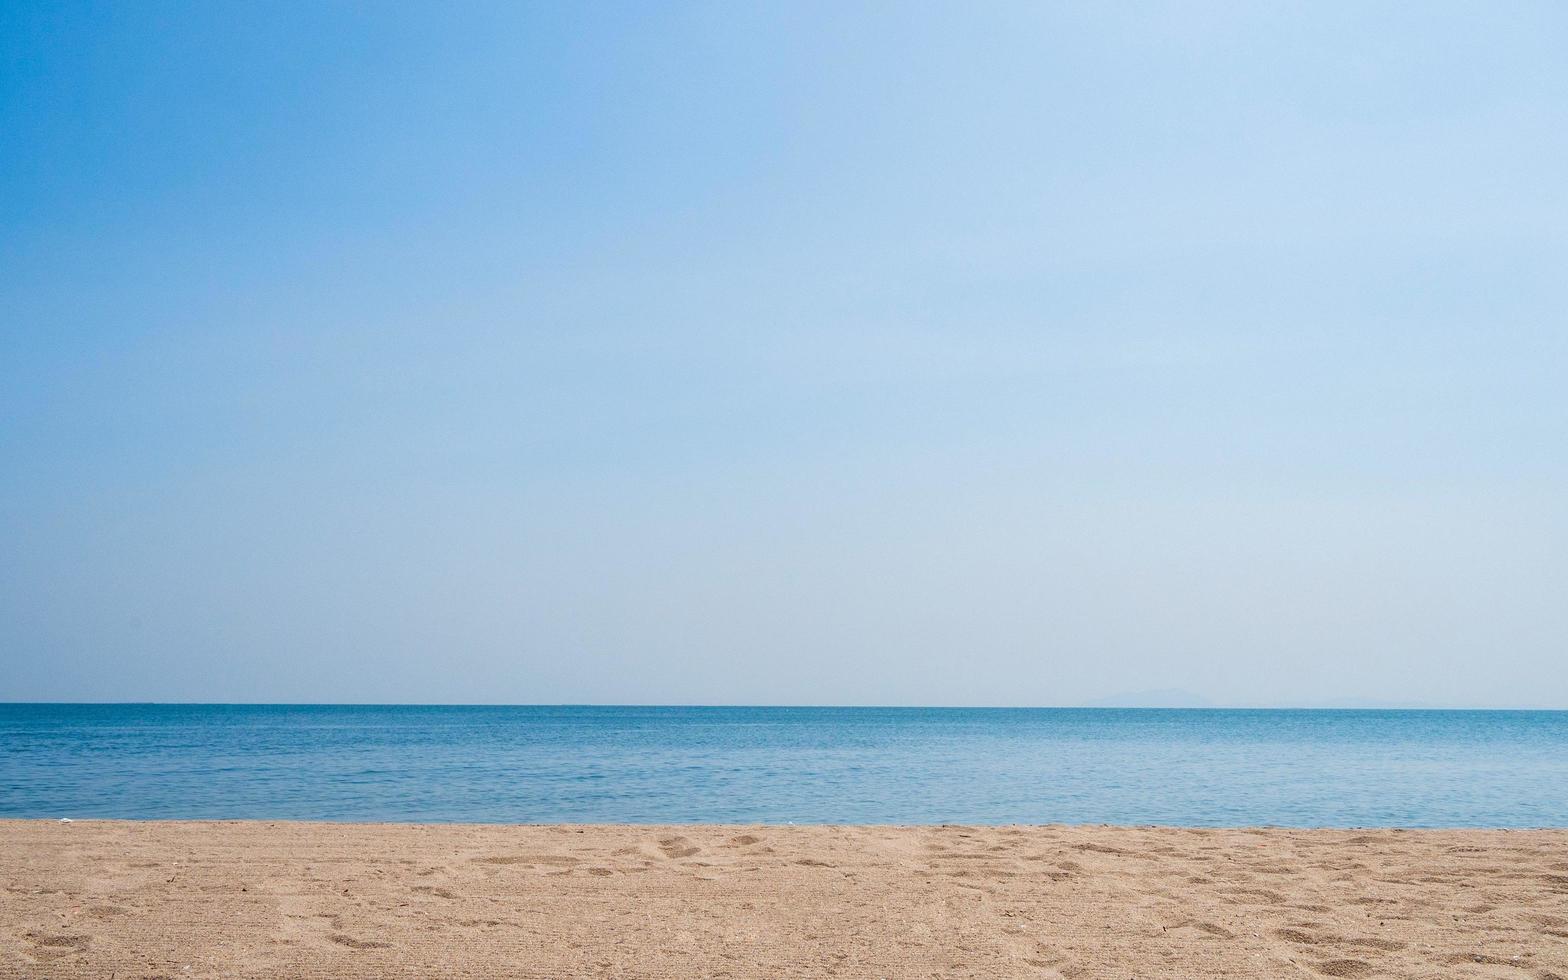 panoramal vista de frente paisaje azul mar azul playa marrón fondo mañana día mirar tranquilo verano naturaleza tropical mar hermoso mar agua viajes bangsaen playa este tailandia chonburi exótico horizon. foto